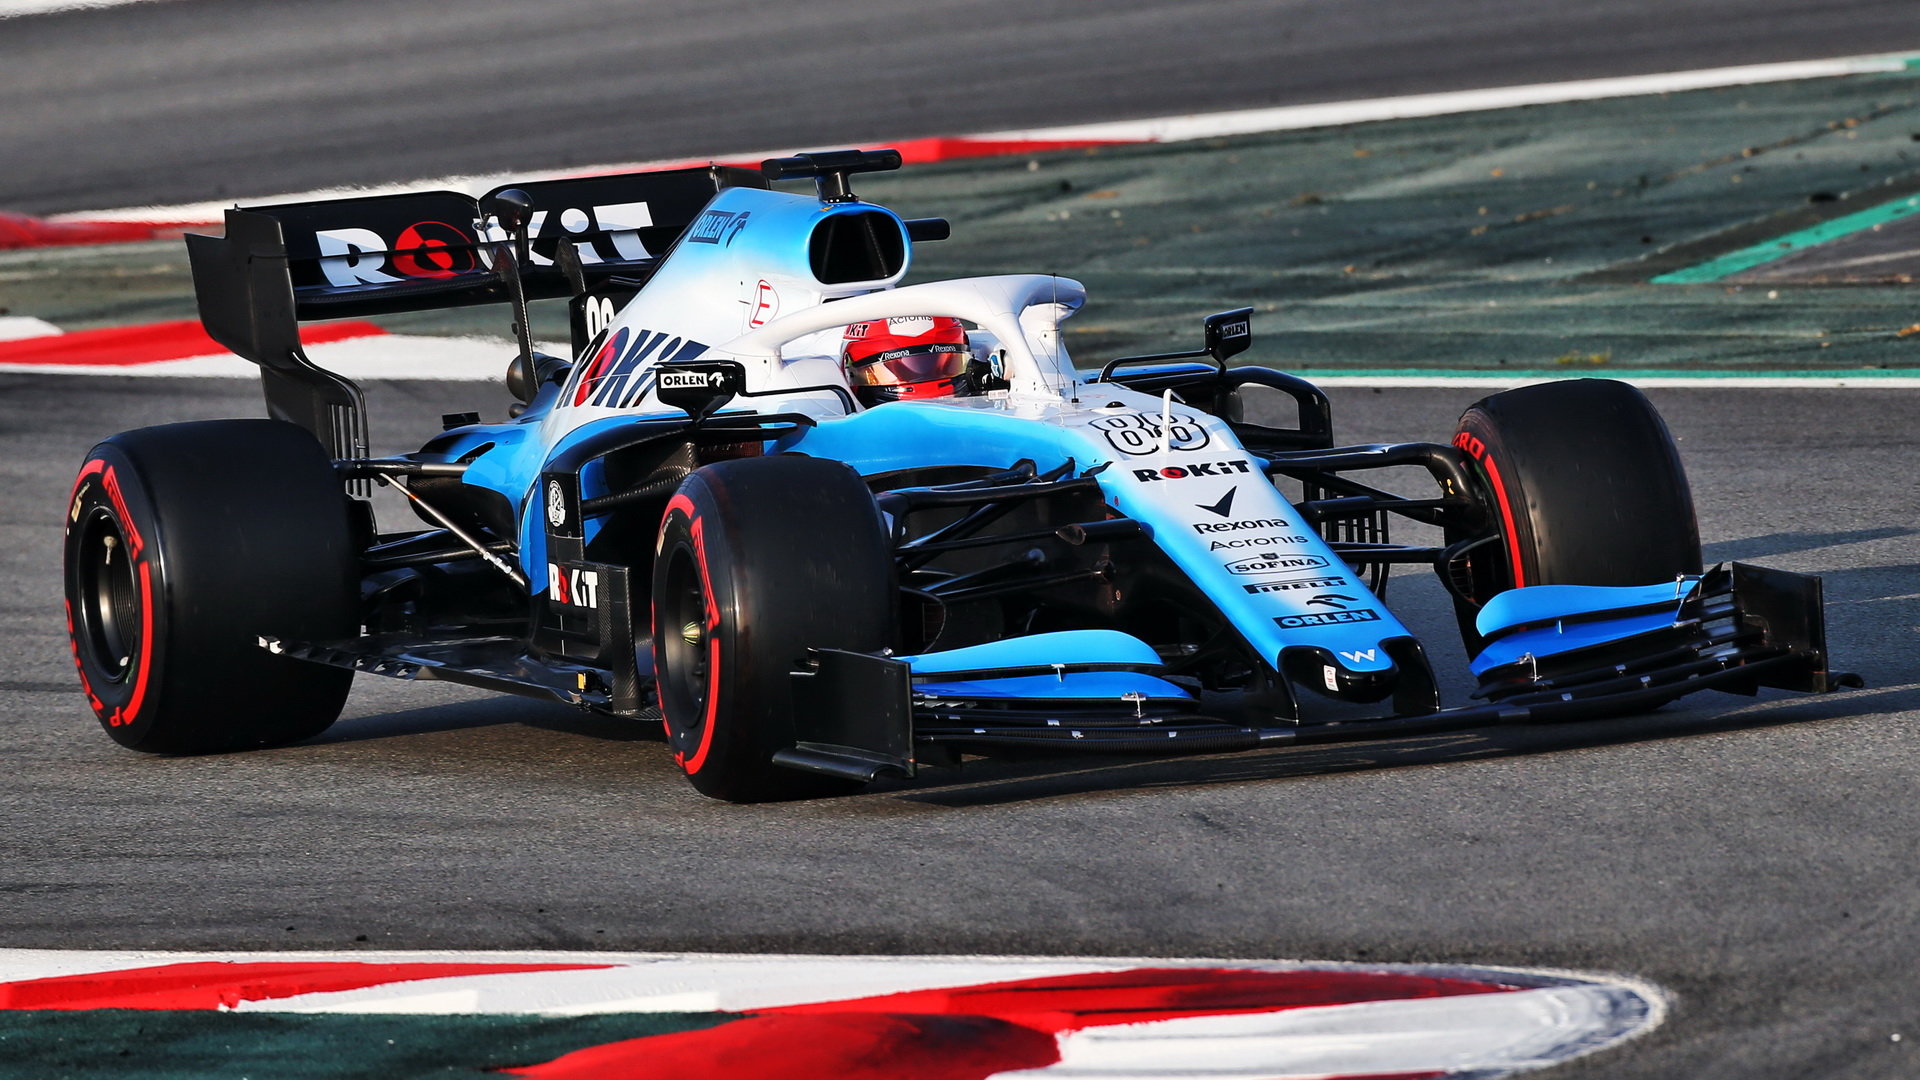 Robert Kubica pooprvé ve voze Williams FW42 - Mercedes při čtvrtém dnu testů v Barceloně